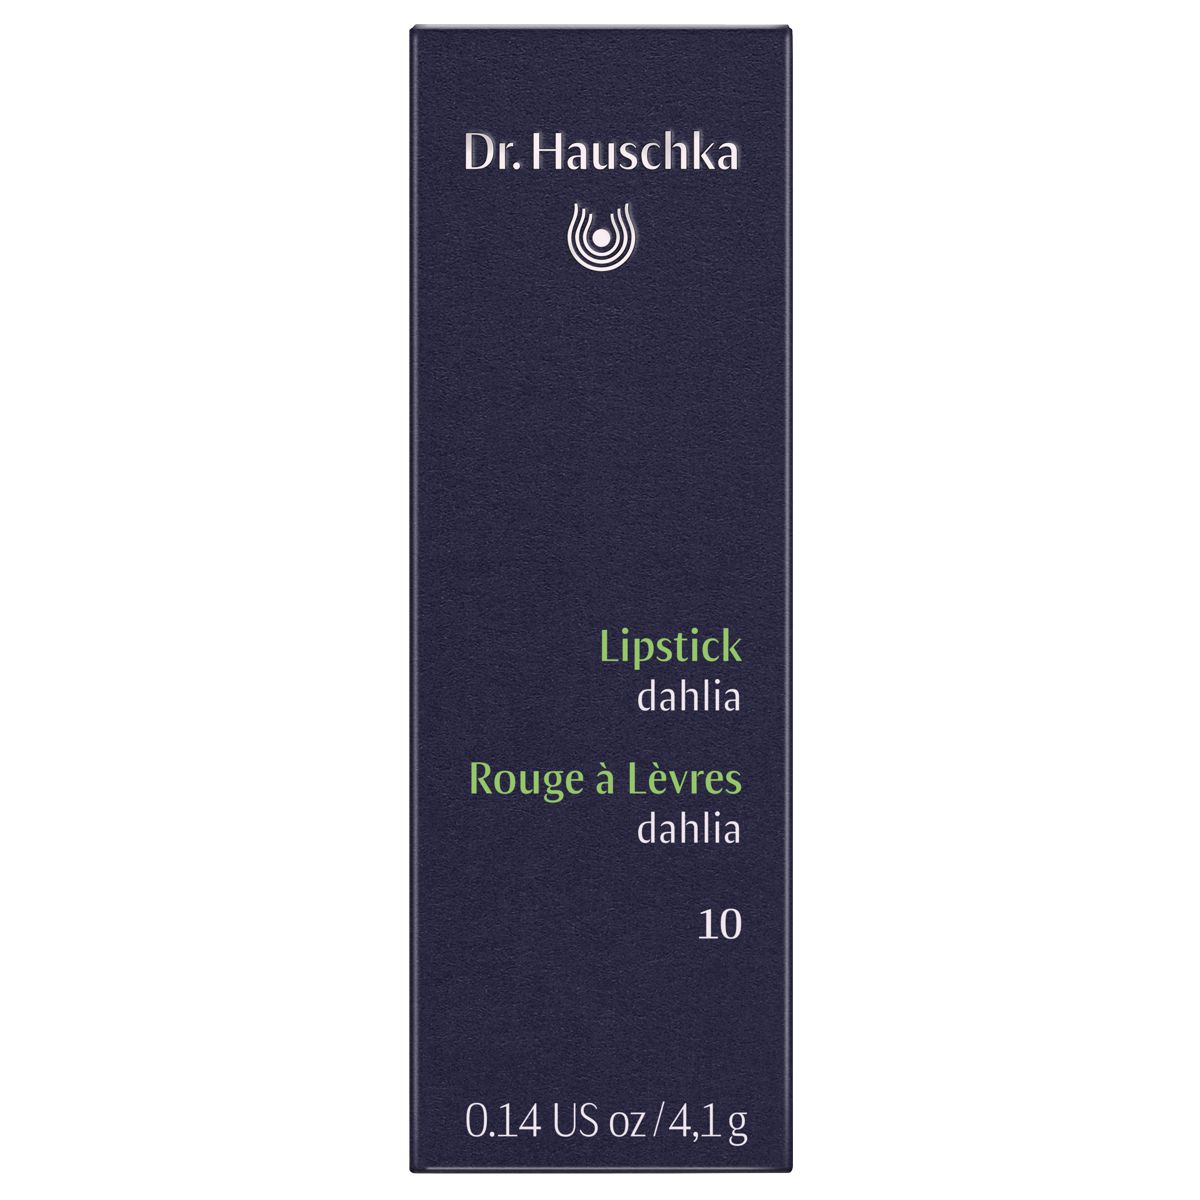 Dr_Hauschka_Lipstick_10_dahlia_online_kaufen